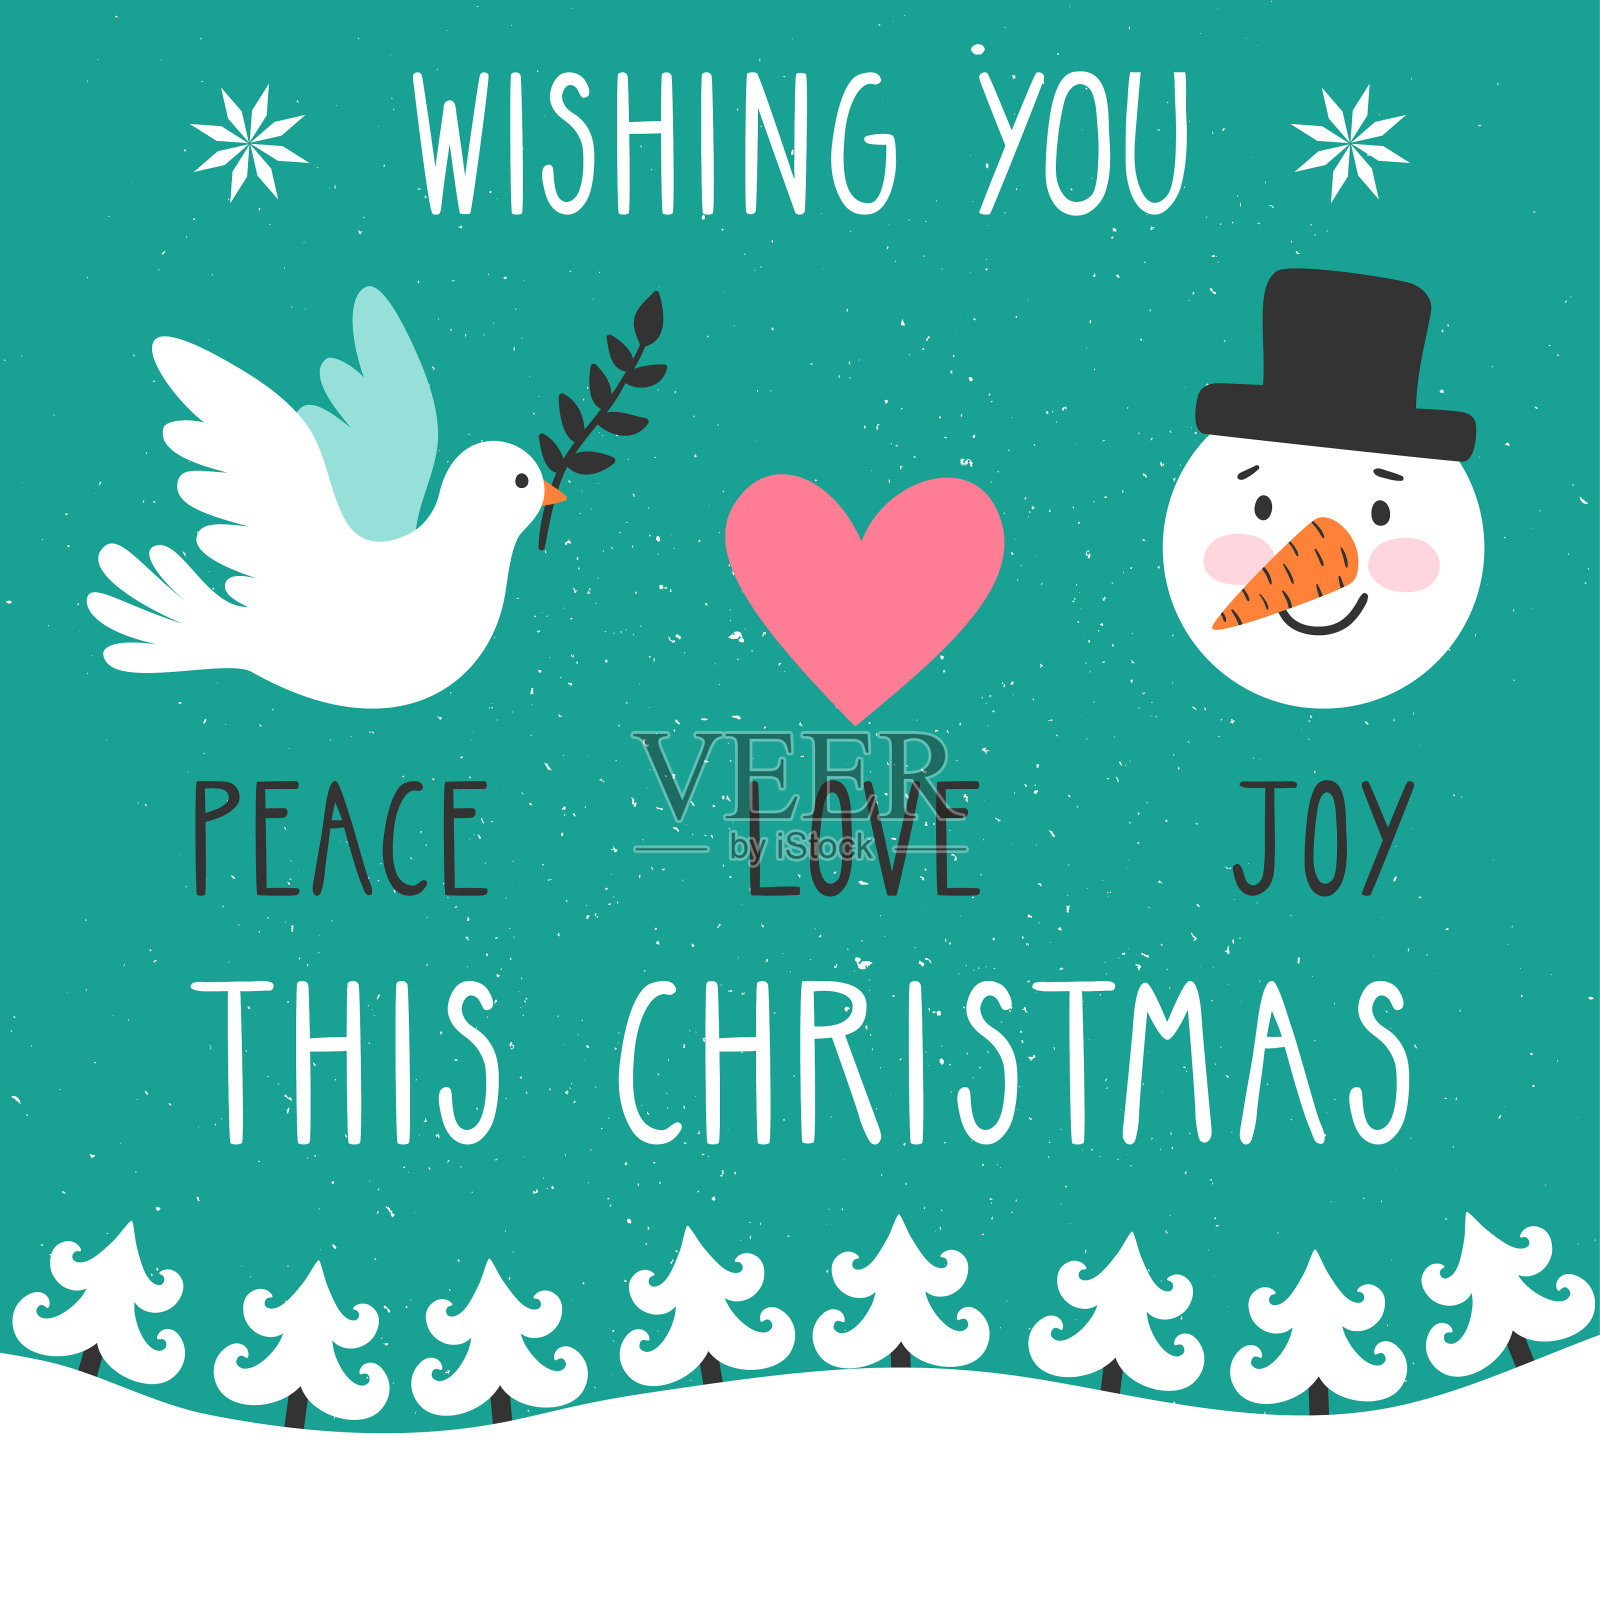 概念圣诞背景与文字“愿你平安、爱、快乐这个圣诞节”。明亮的贺卡，白色的鸽子，心，雪人和冬天的风景。节日卡片。设计模板素材